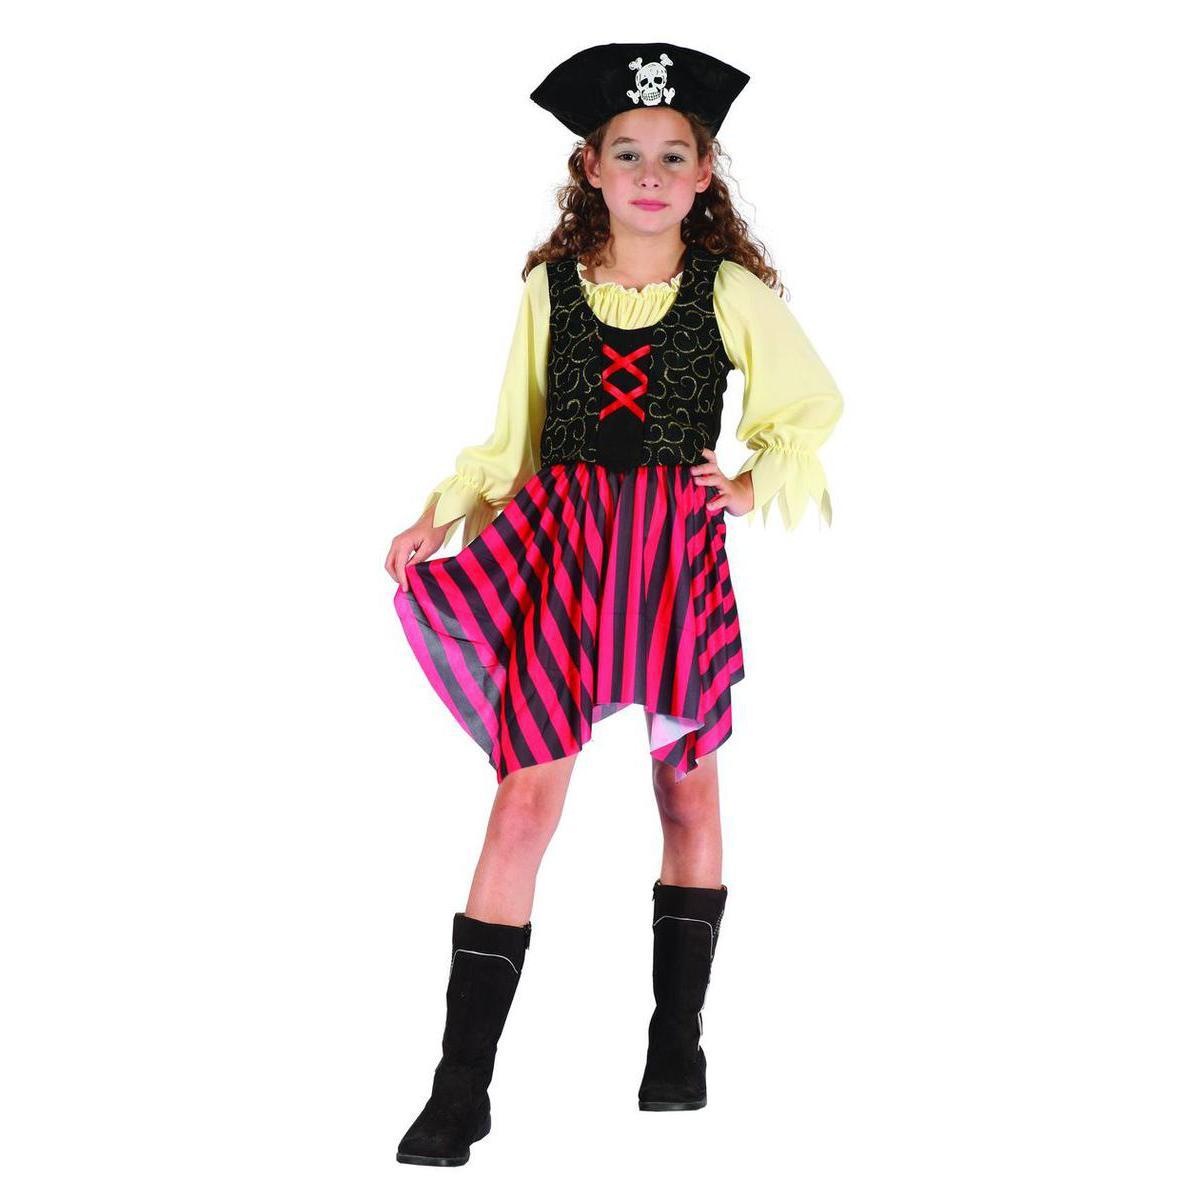 Costume enfant pirate pour fille en polyester - M -Multicolore